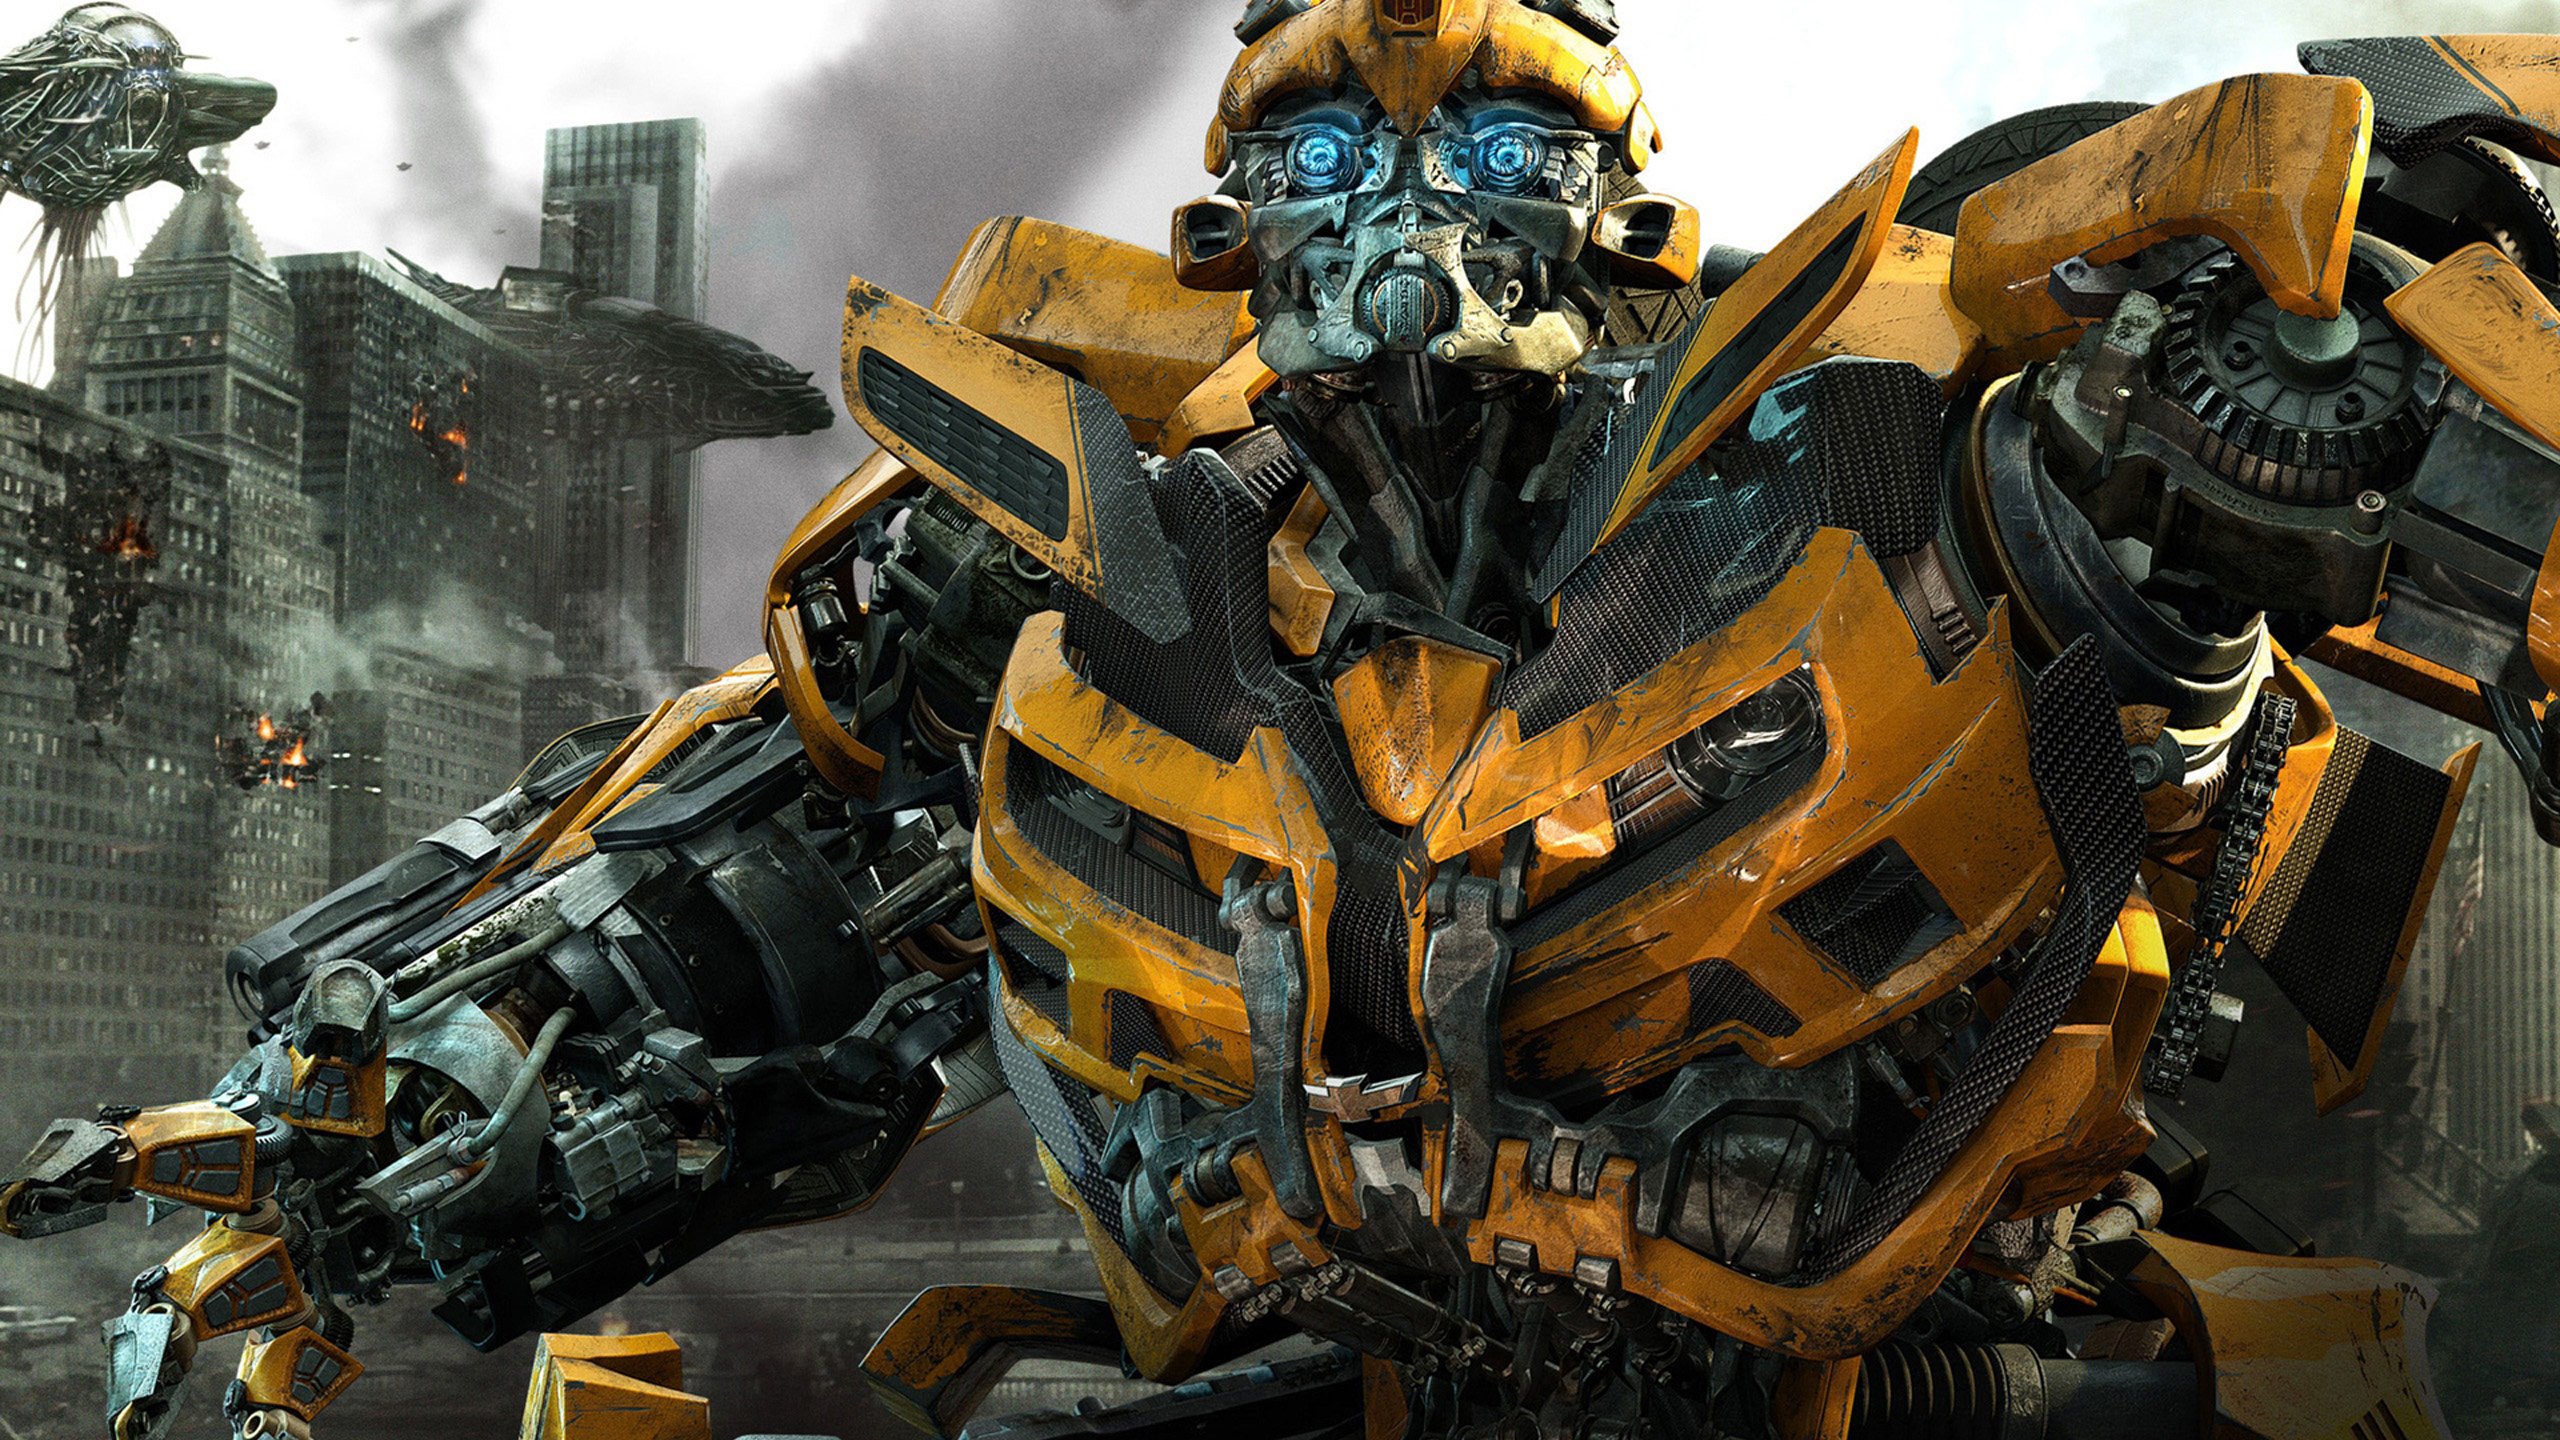 Transformers 3 Optimus Prime Wallpapers Hd Wallpapers   Resim   Sayfa